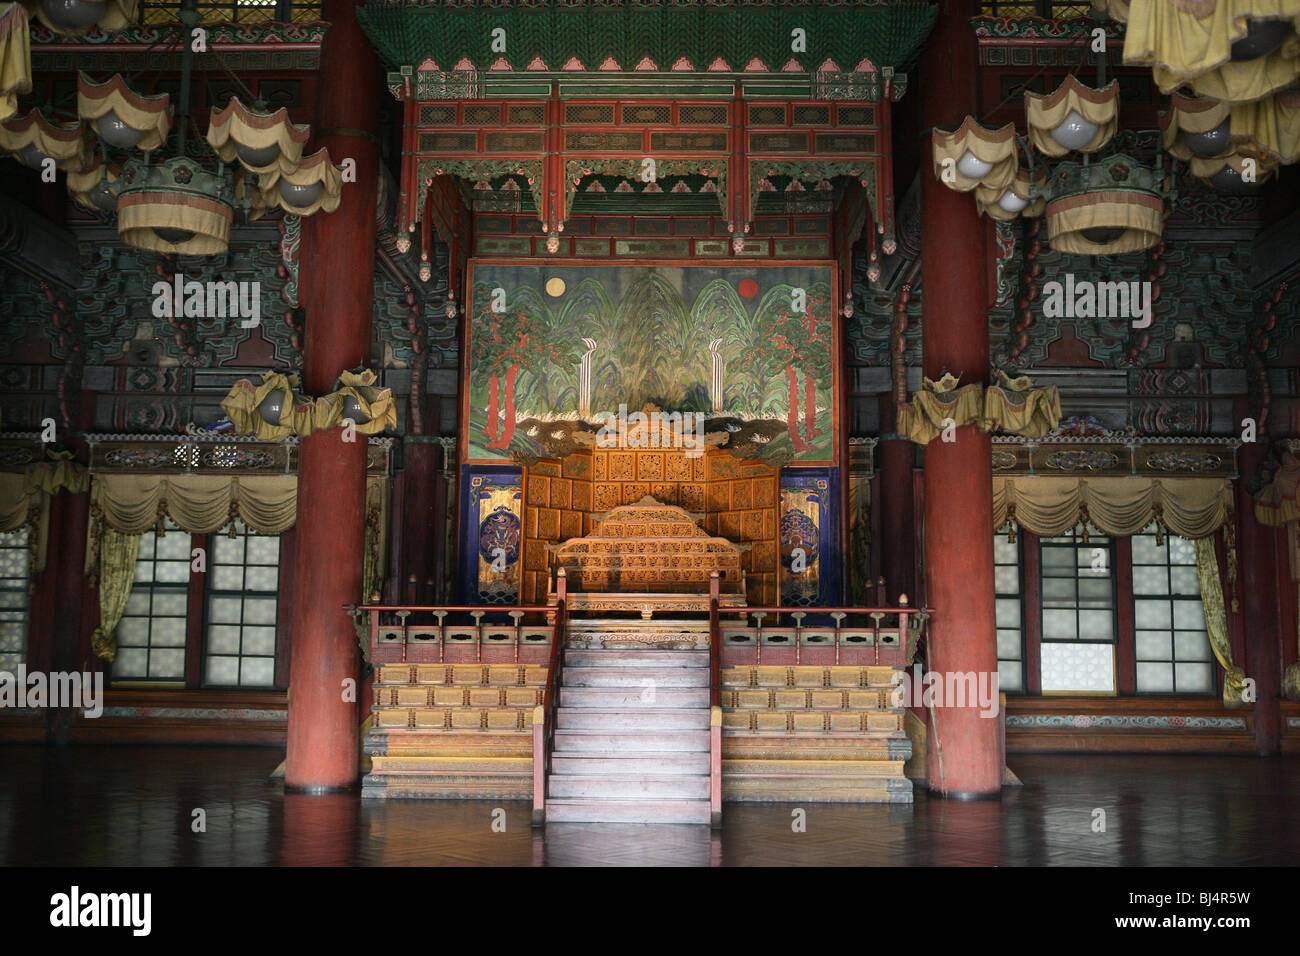 SÜDKOREA. SEOUL. Changdeokgung Palace, erbaut im 15. Jahrhundert von der Joseon-Dynastie. UNESCO-Weltkulturerbe. Stockfoto